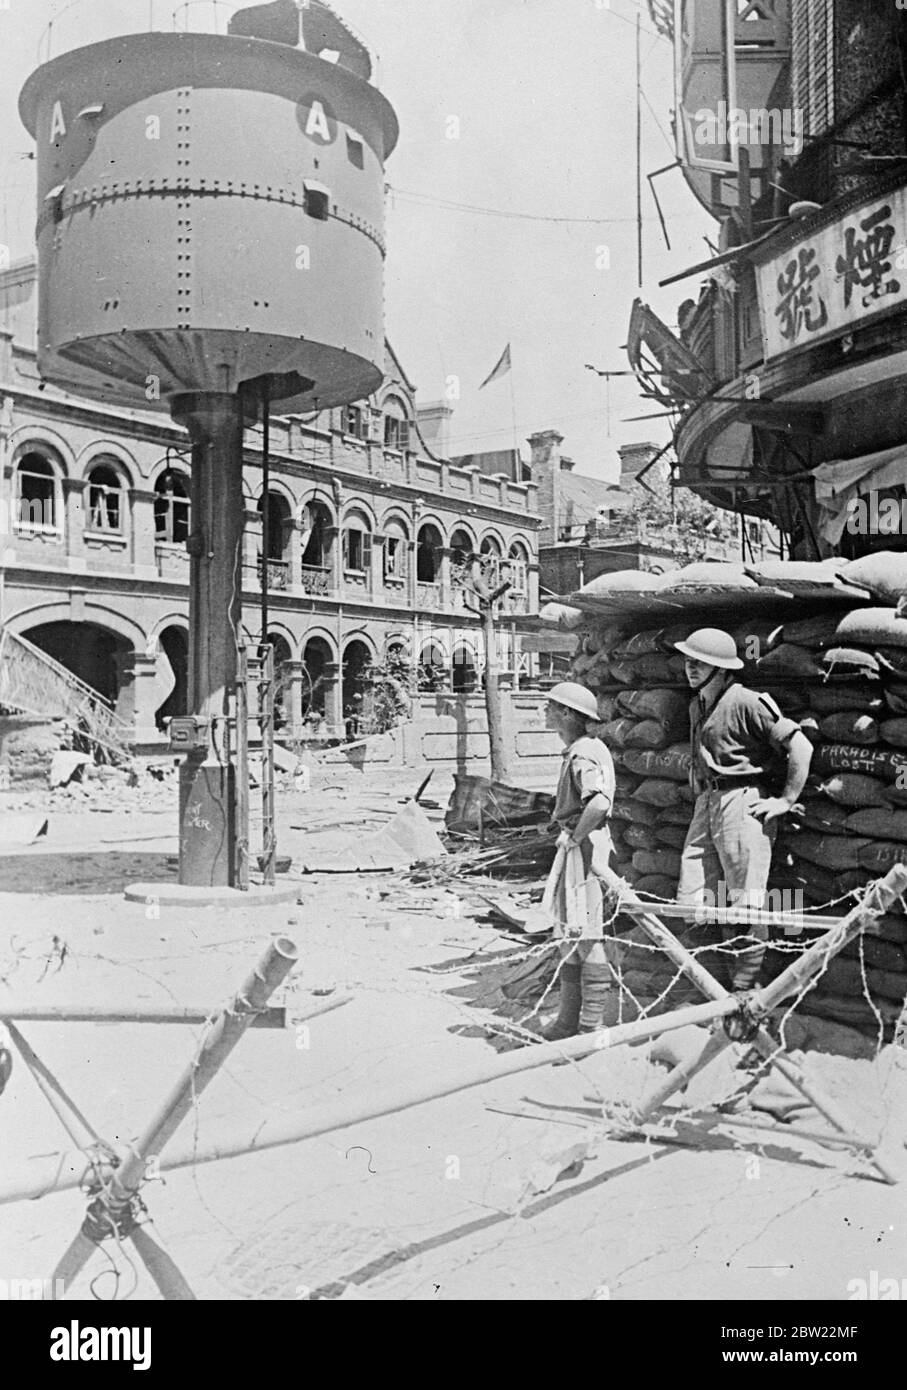 Britische Soldaten hätten in Shanghai durch japanische Bombe beinahe ausgelöscht. Britische Soldaten, die einen Posten an der Ecke Kiangse Road und Range Road besetzen, gratulierten sich zu einer der engsten Fluchten, die ausländische Truppen während der Kämpfe in Shanghai erlebt haben. Eine Luftbombe, die von einem japanischen Kriegsflugzeug für einen chinesischen Scharfschützenposten in der Nähe vorgesehen war, verpasste ihr Ziel und explodierte mitten auf der Straße. Das Brighton ist eine wunderbare Flucht vor der Ausrottet. Foto zeigt, die britische Post an der Ecke der Kiangse Road und Range Road, Shanghai. Soldaten vermessen die Schäden, die durch die Japane verursacht wurden Stockfoto